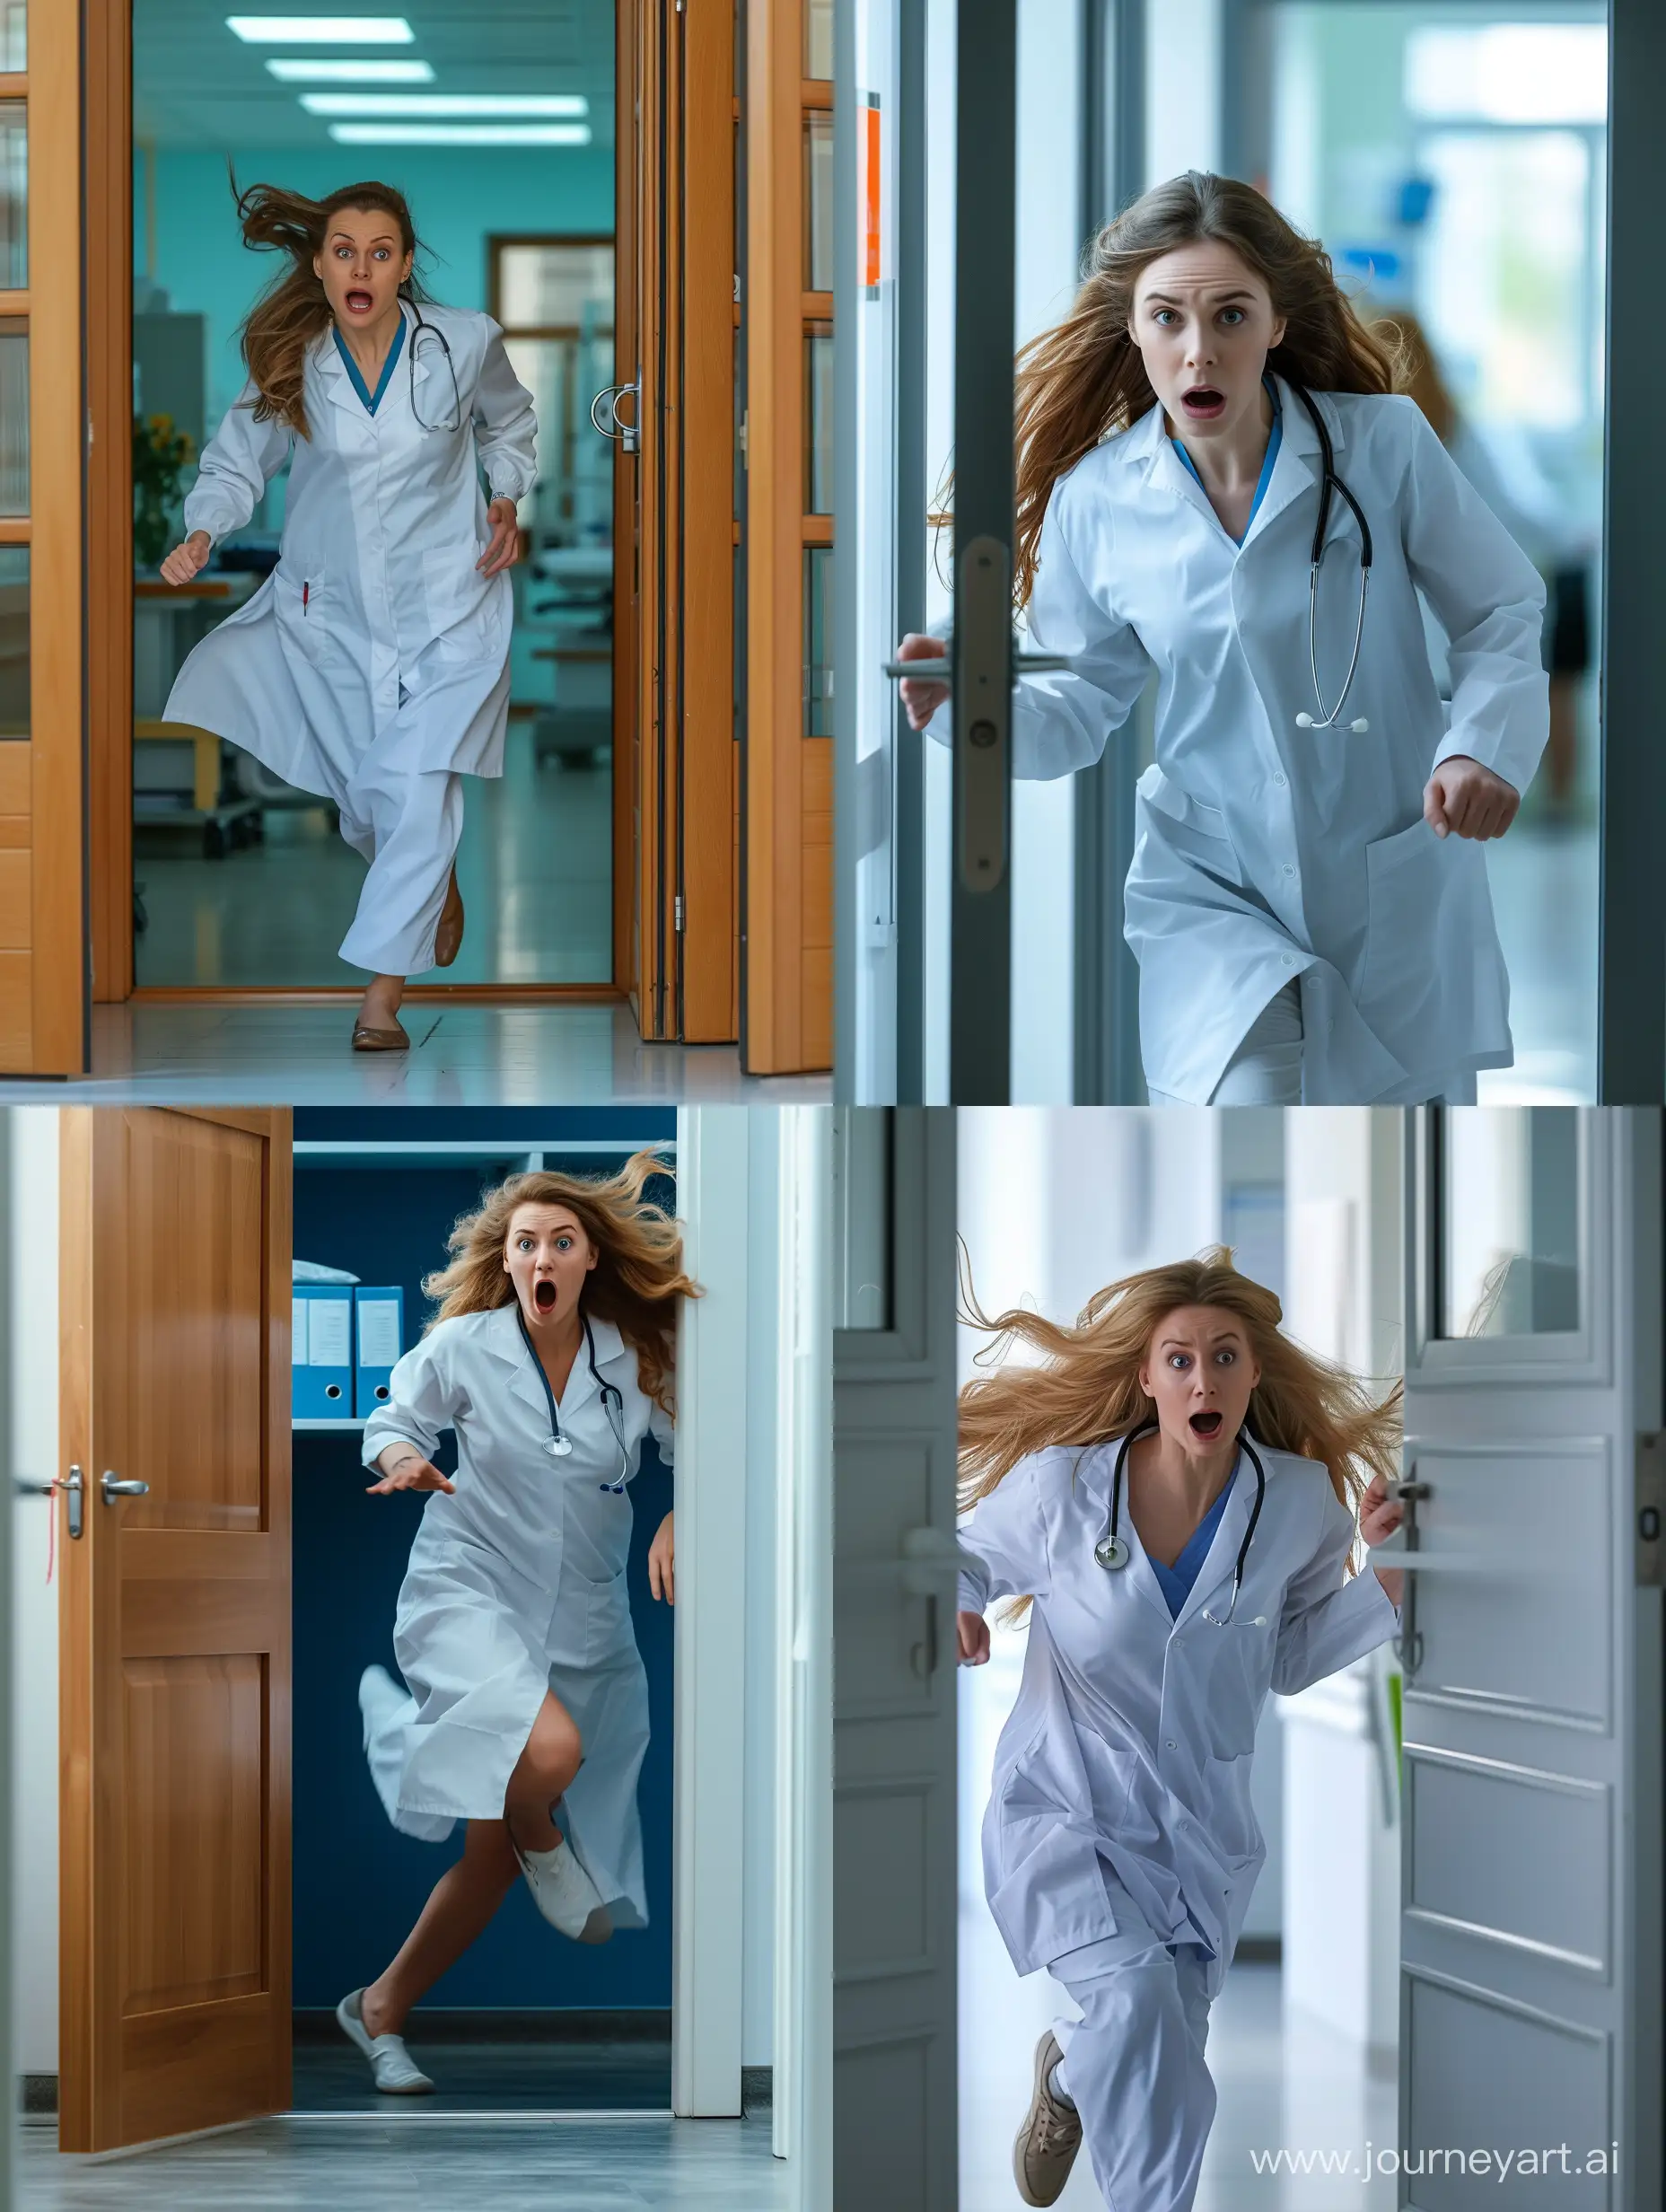  женщина молодой  врач европейская внешность в медицинском халате в  испуге выбегает из двери кабинета в больнице Реалистично